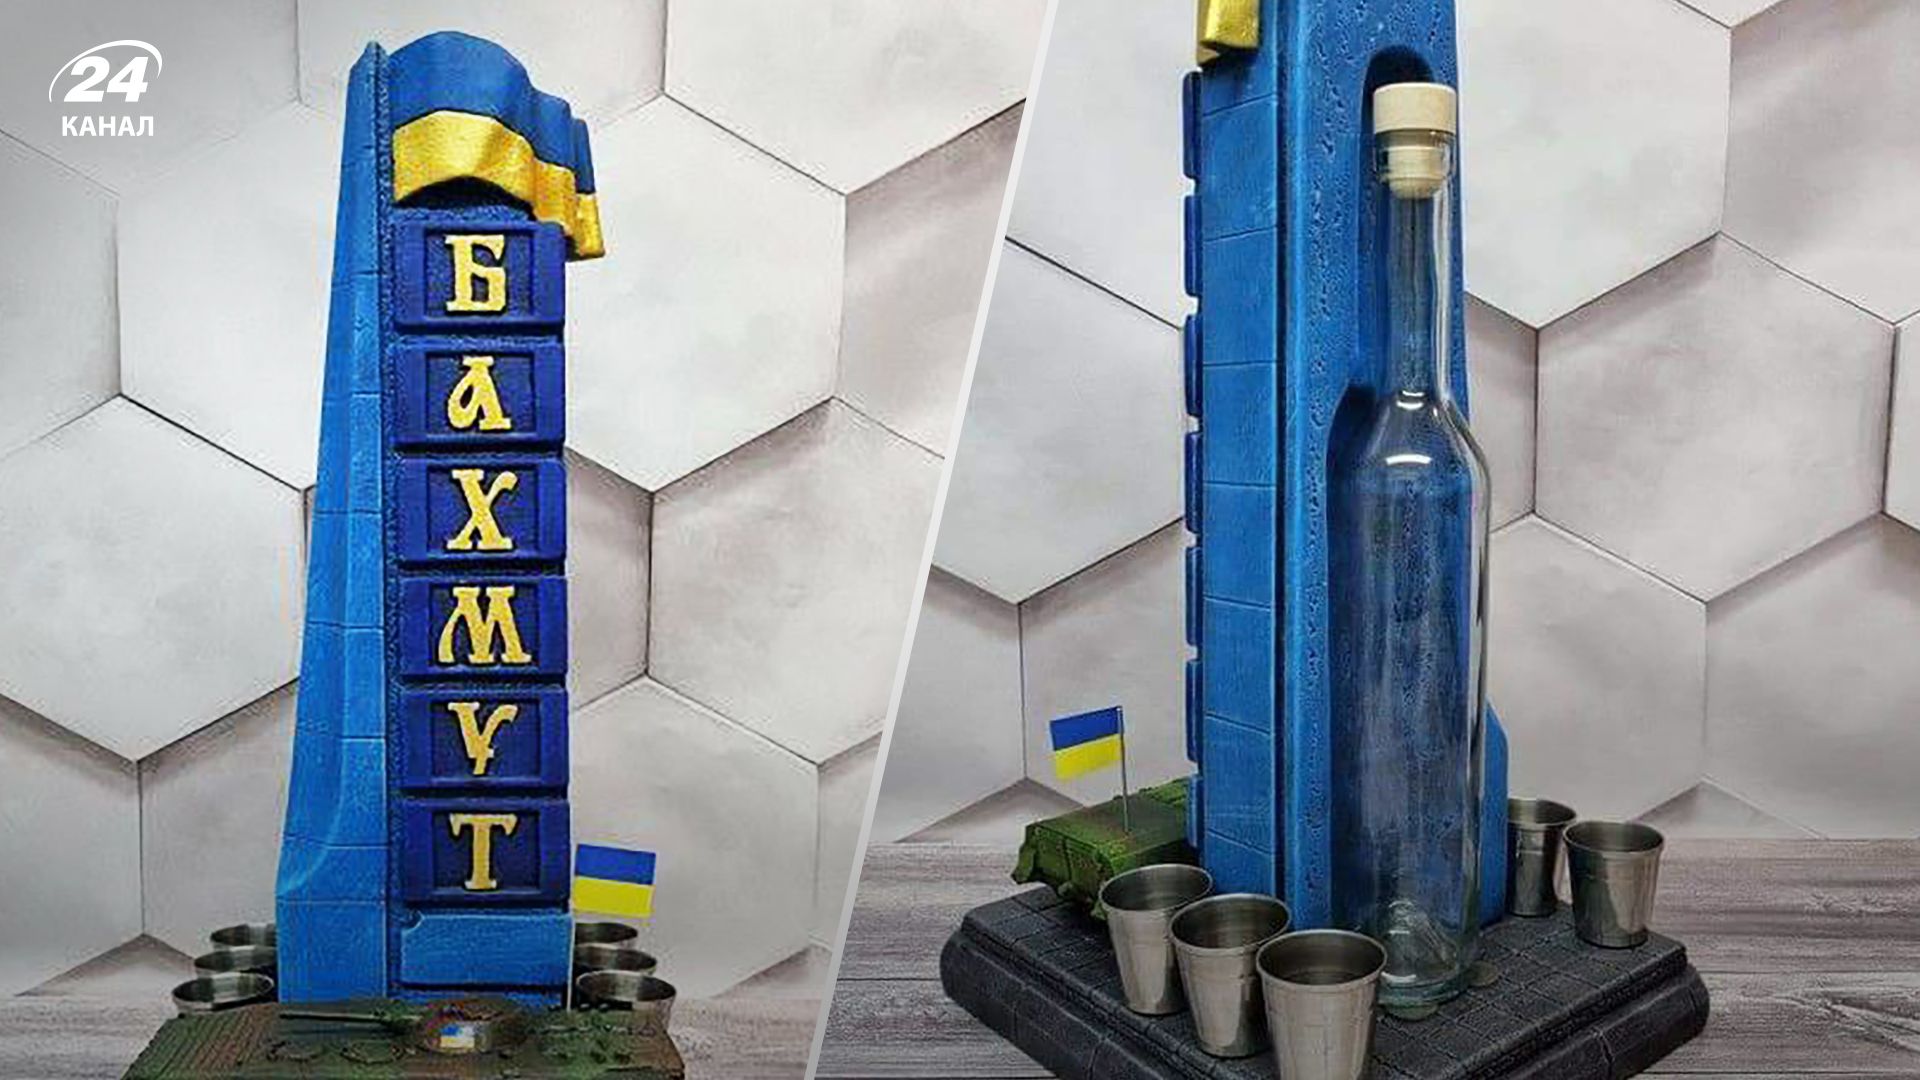 Рюмки Бахмут появились в продаже - украинцы справедливо возмущены